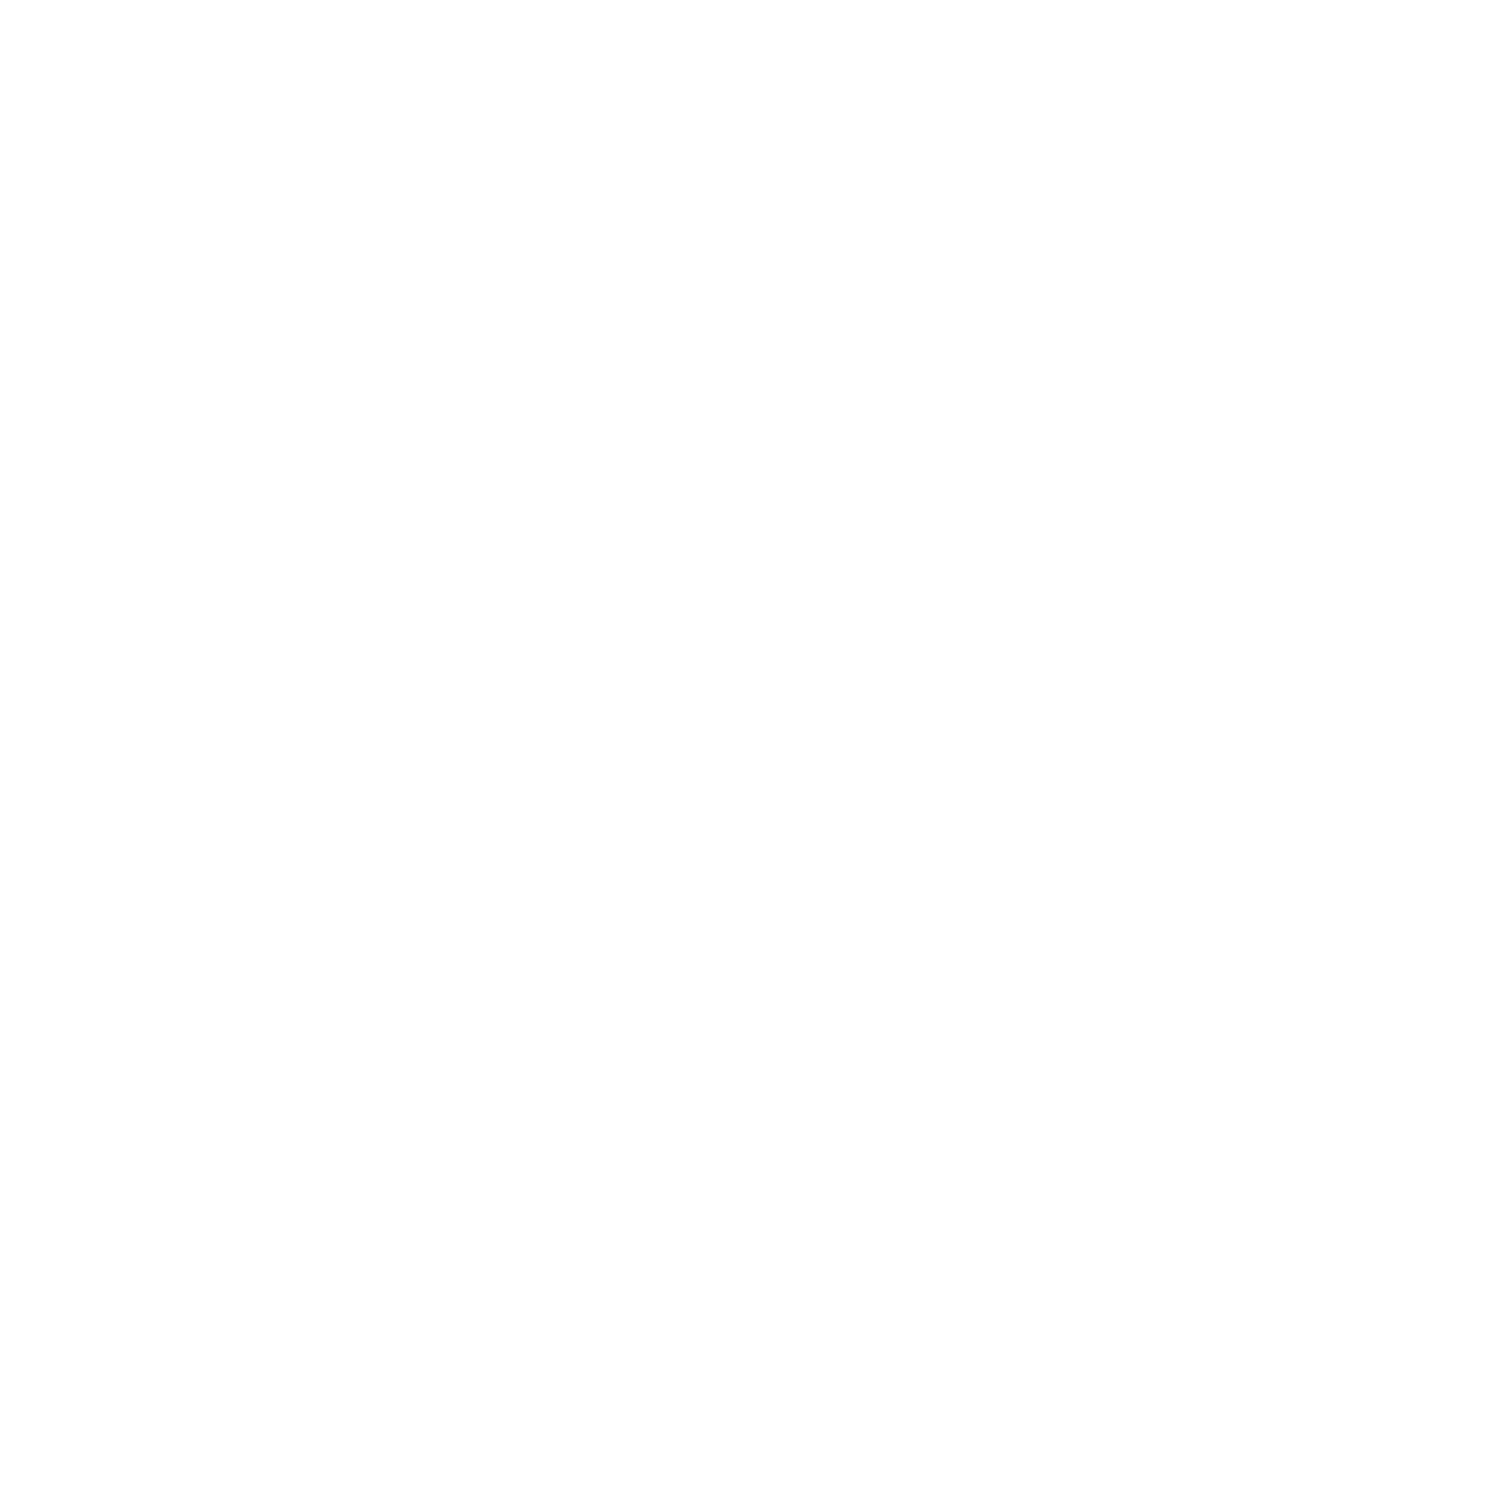 Lara Arslanian